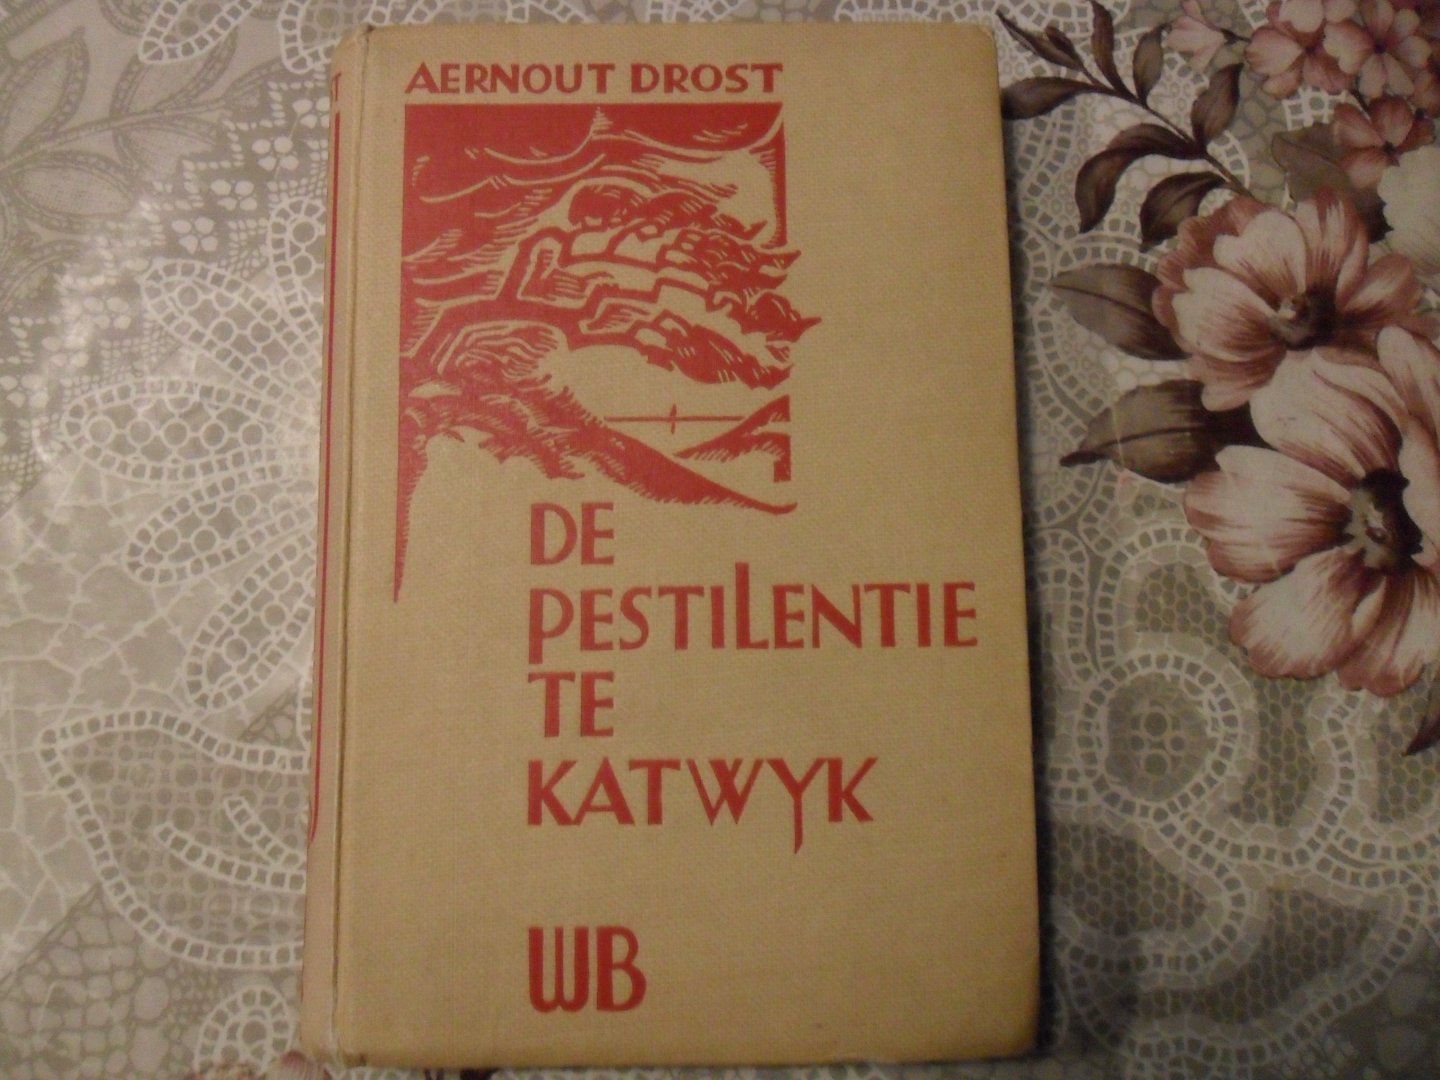 Drost Aernout - De pestilentie te Katwijk (1625)